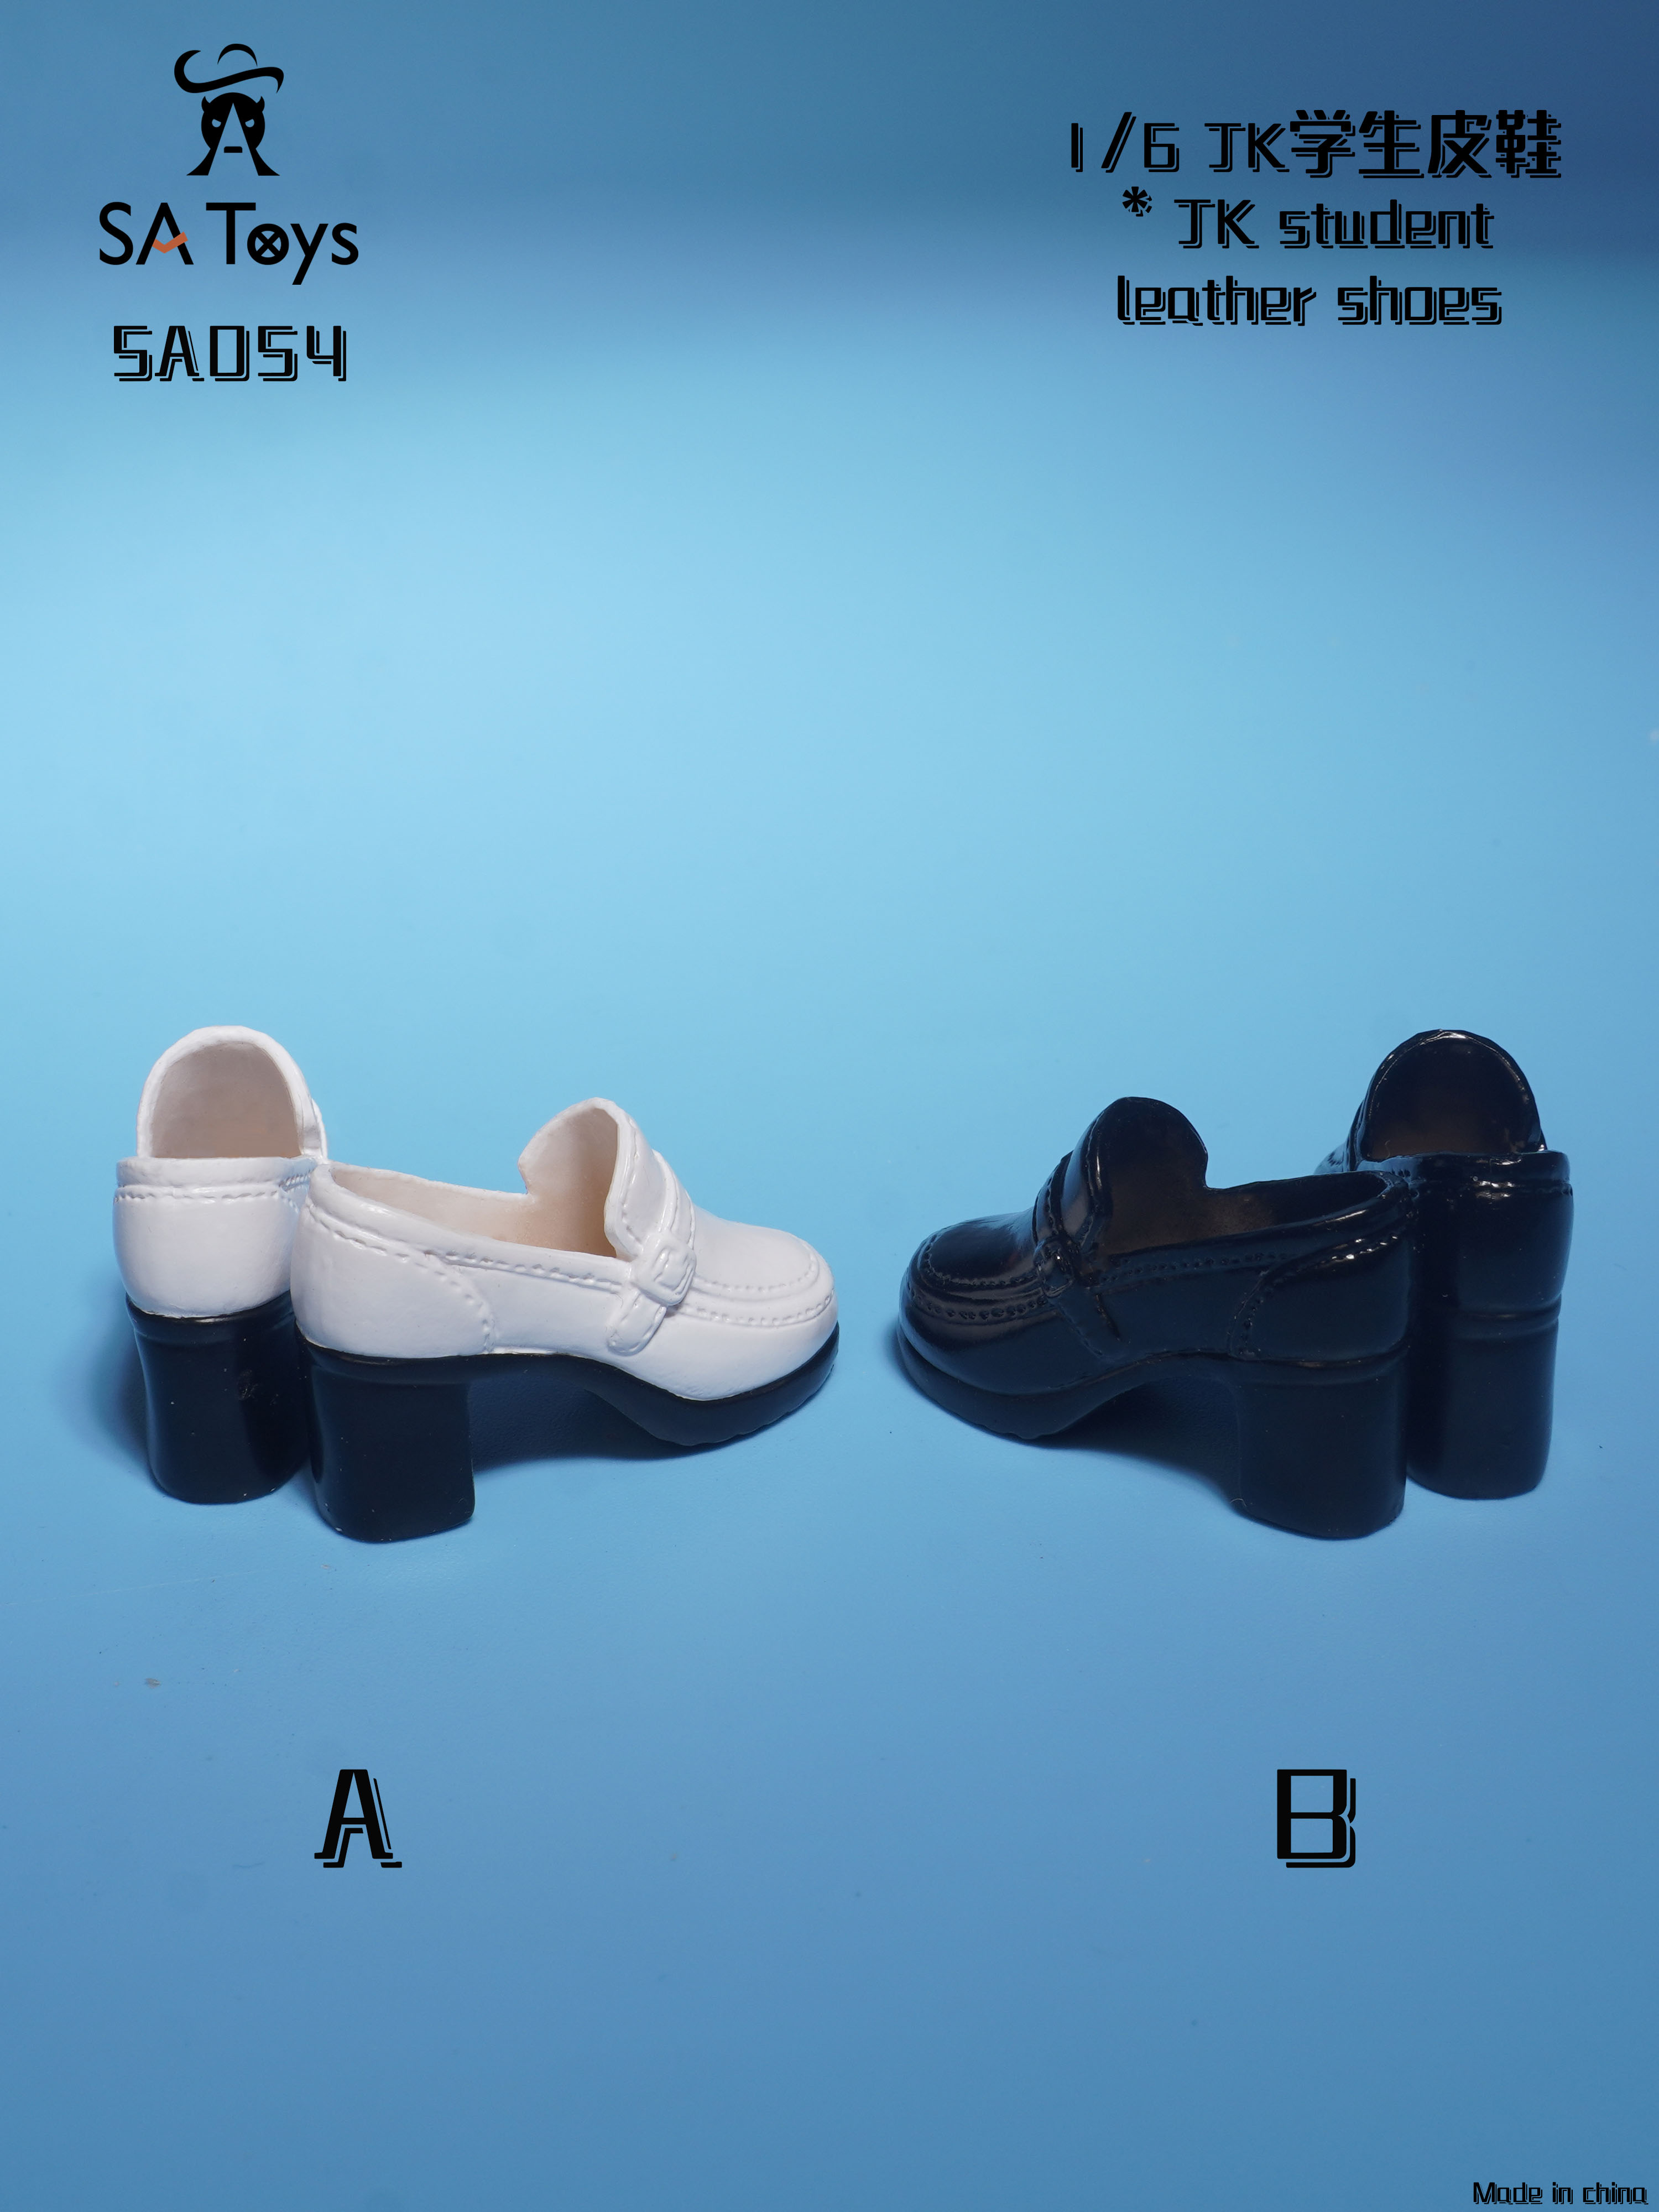 NEW PRODUCT: SA Toys - Hollow leather: shoes (SA009 A/B) / Mid tube boots (SA010 A/B) / student shoes (SA054 A/B) 02134